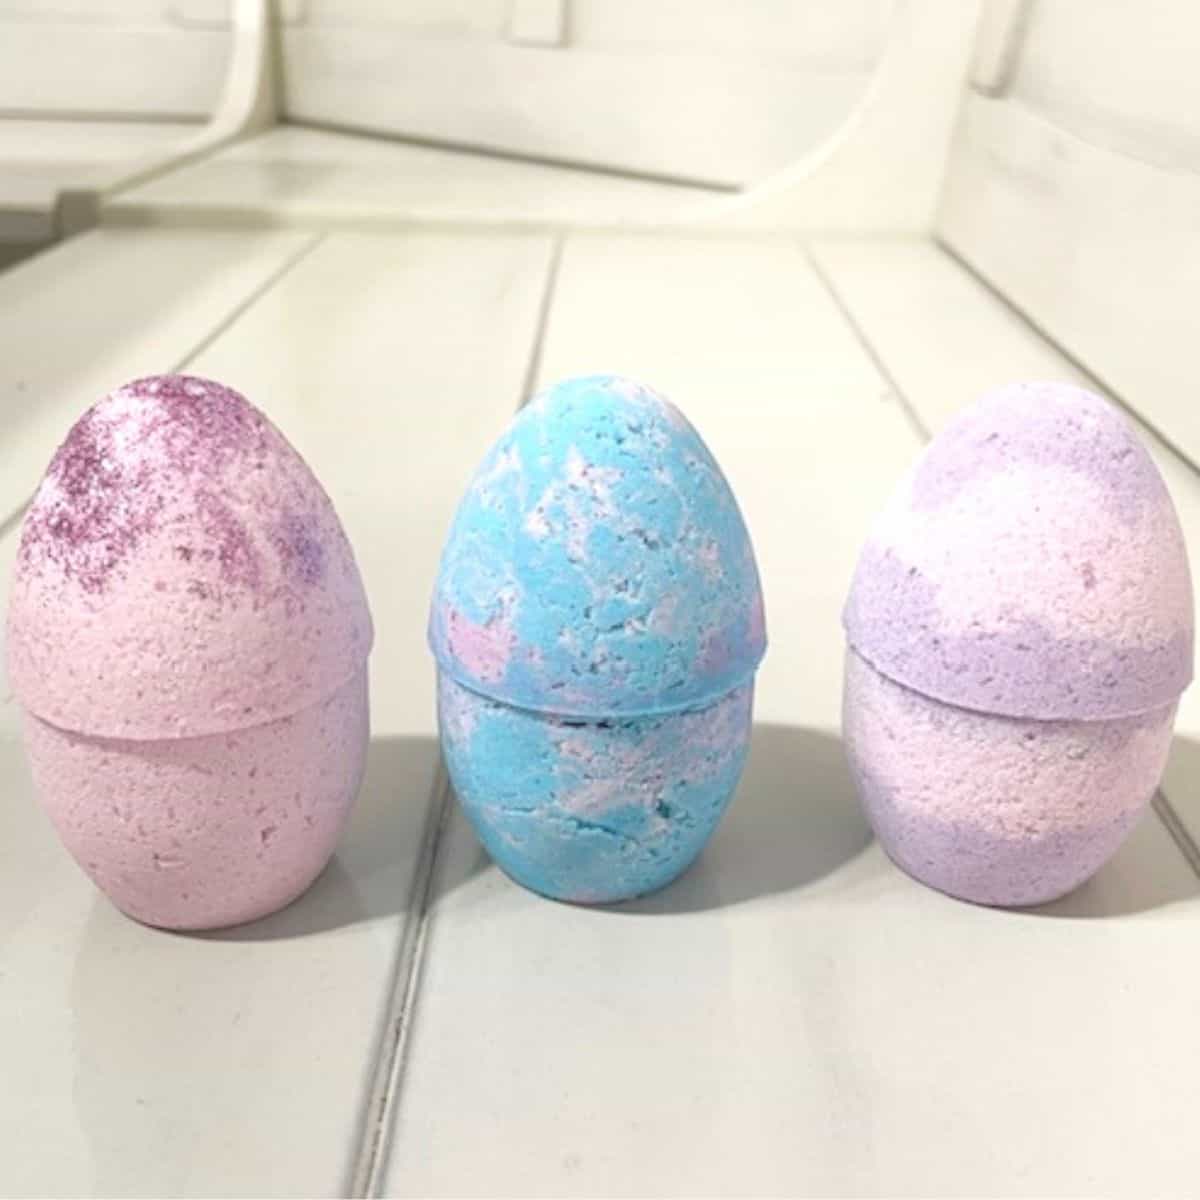 Homemade Easter Egg Bath Bombs for kids